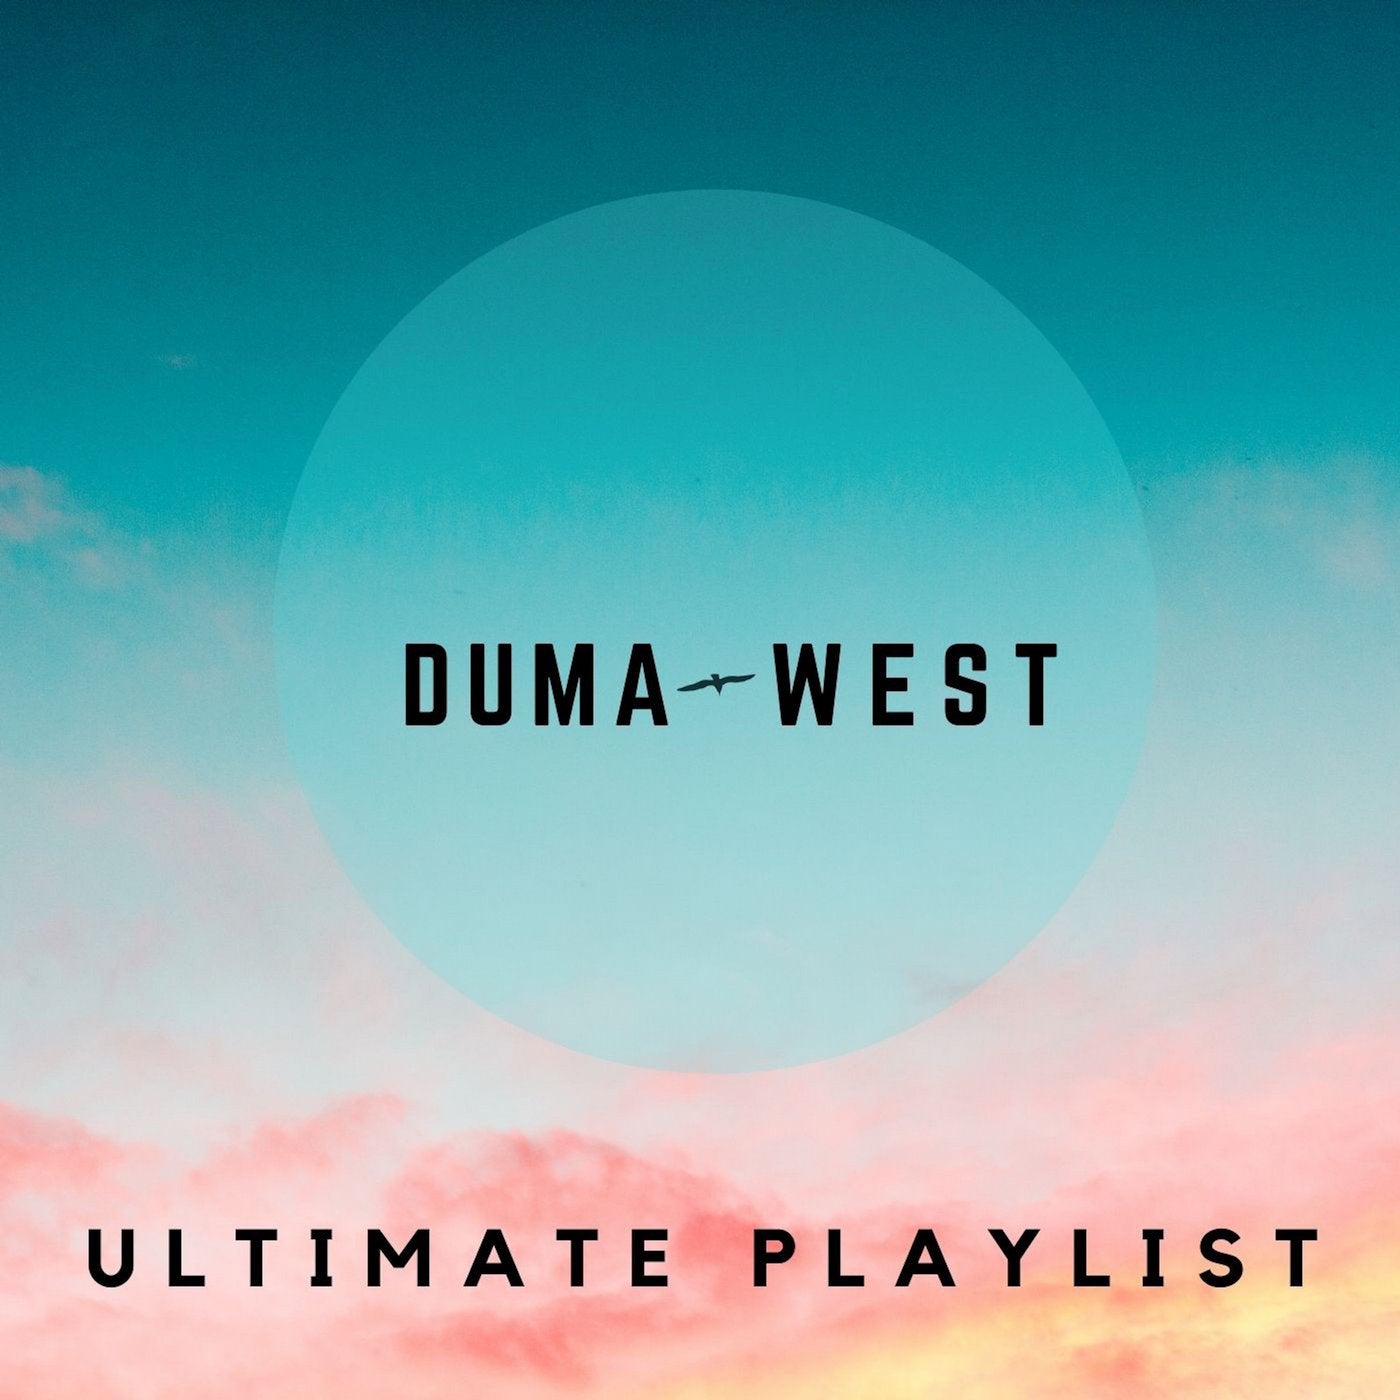 Duma West Ultimate Playlist